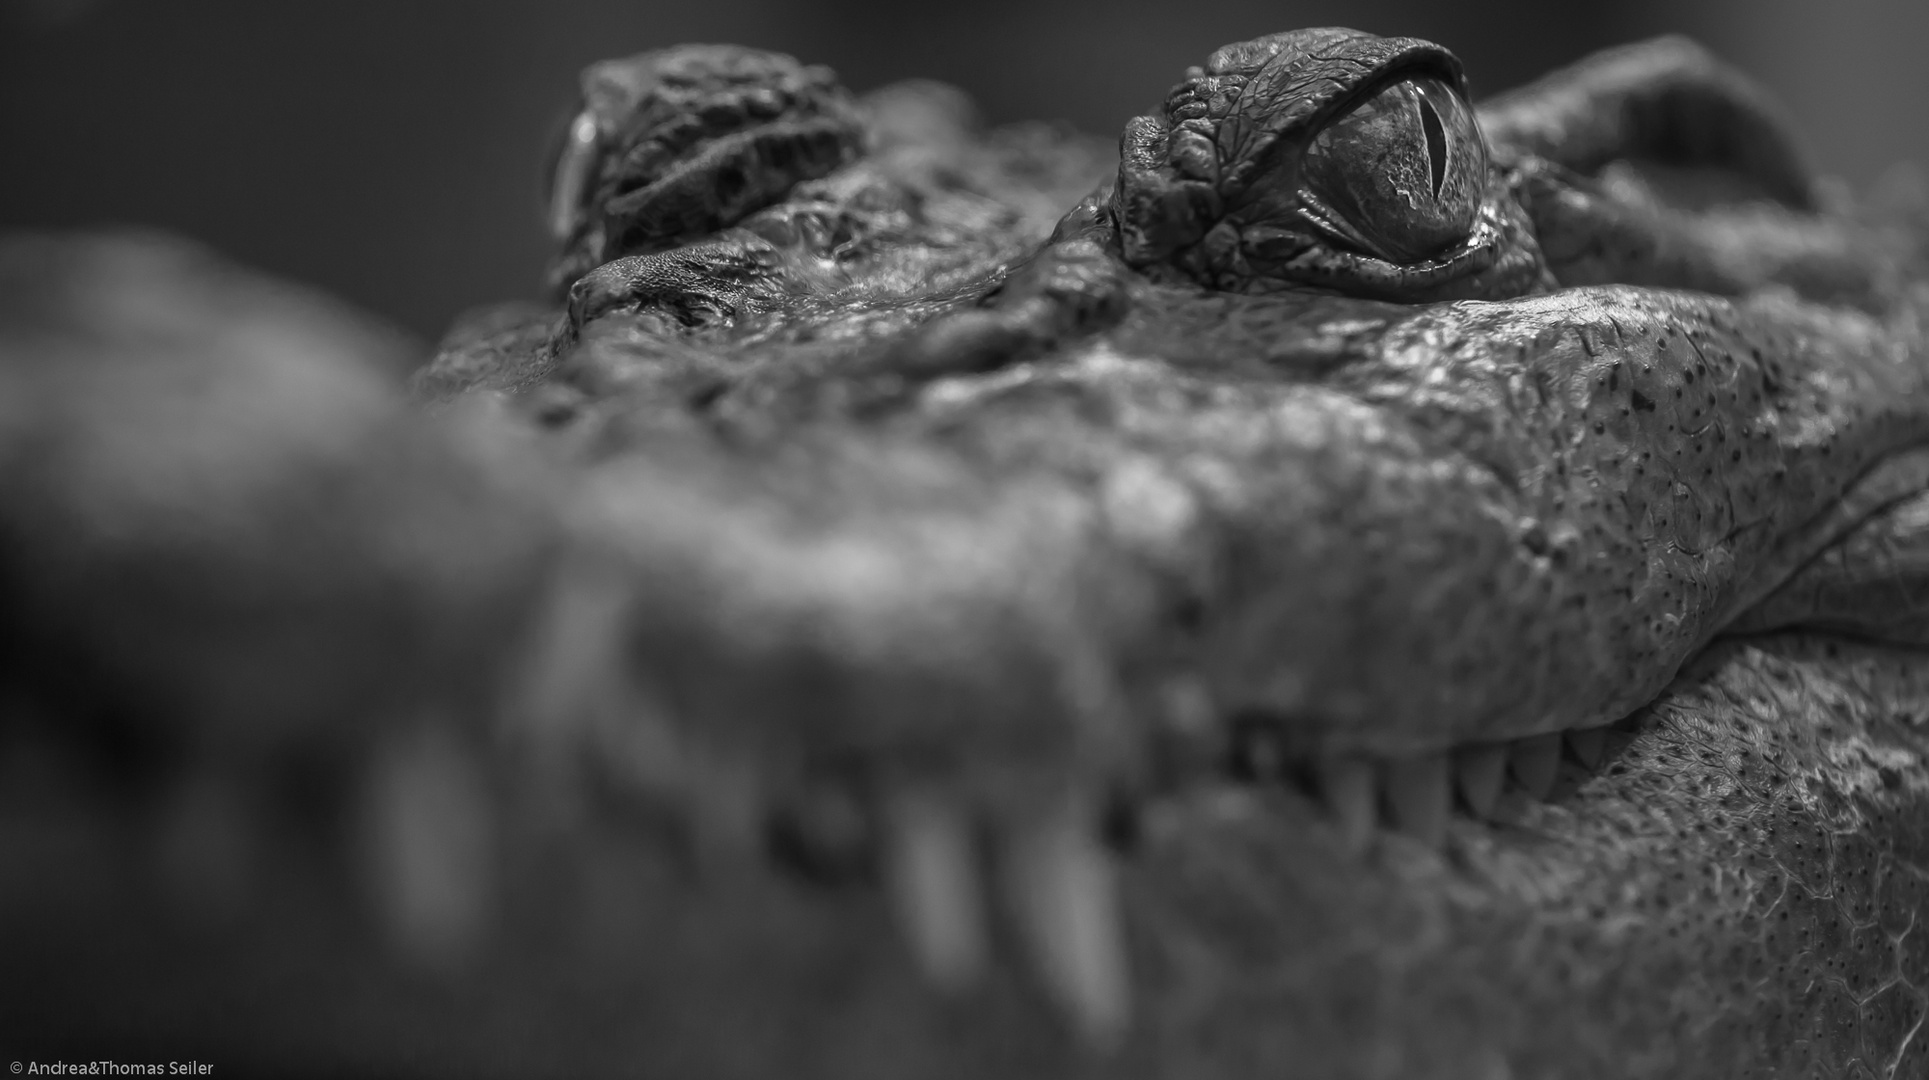 Philippinen-Krokodil